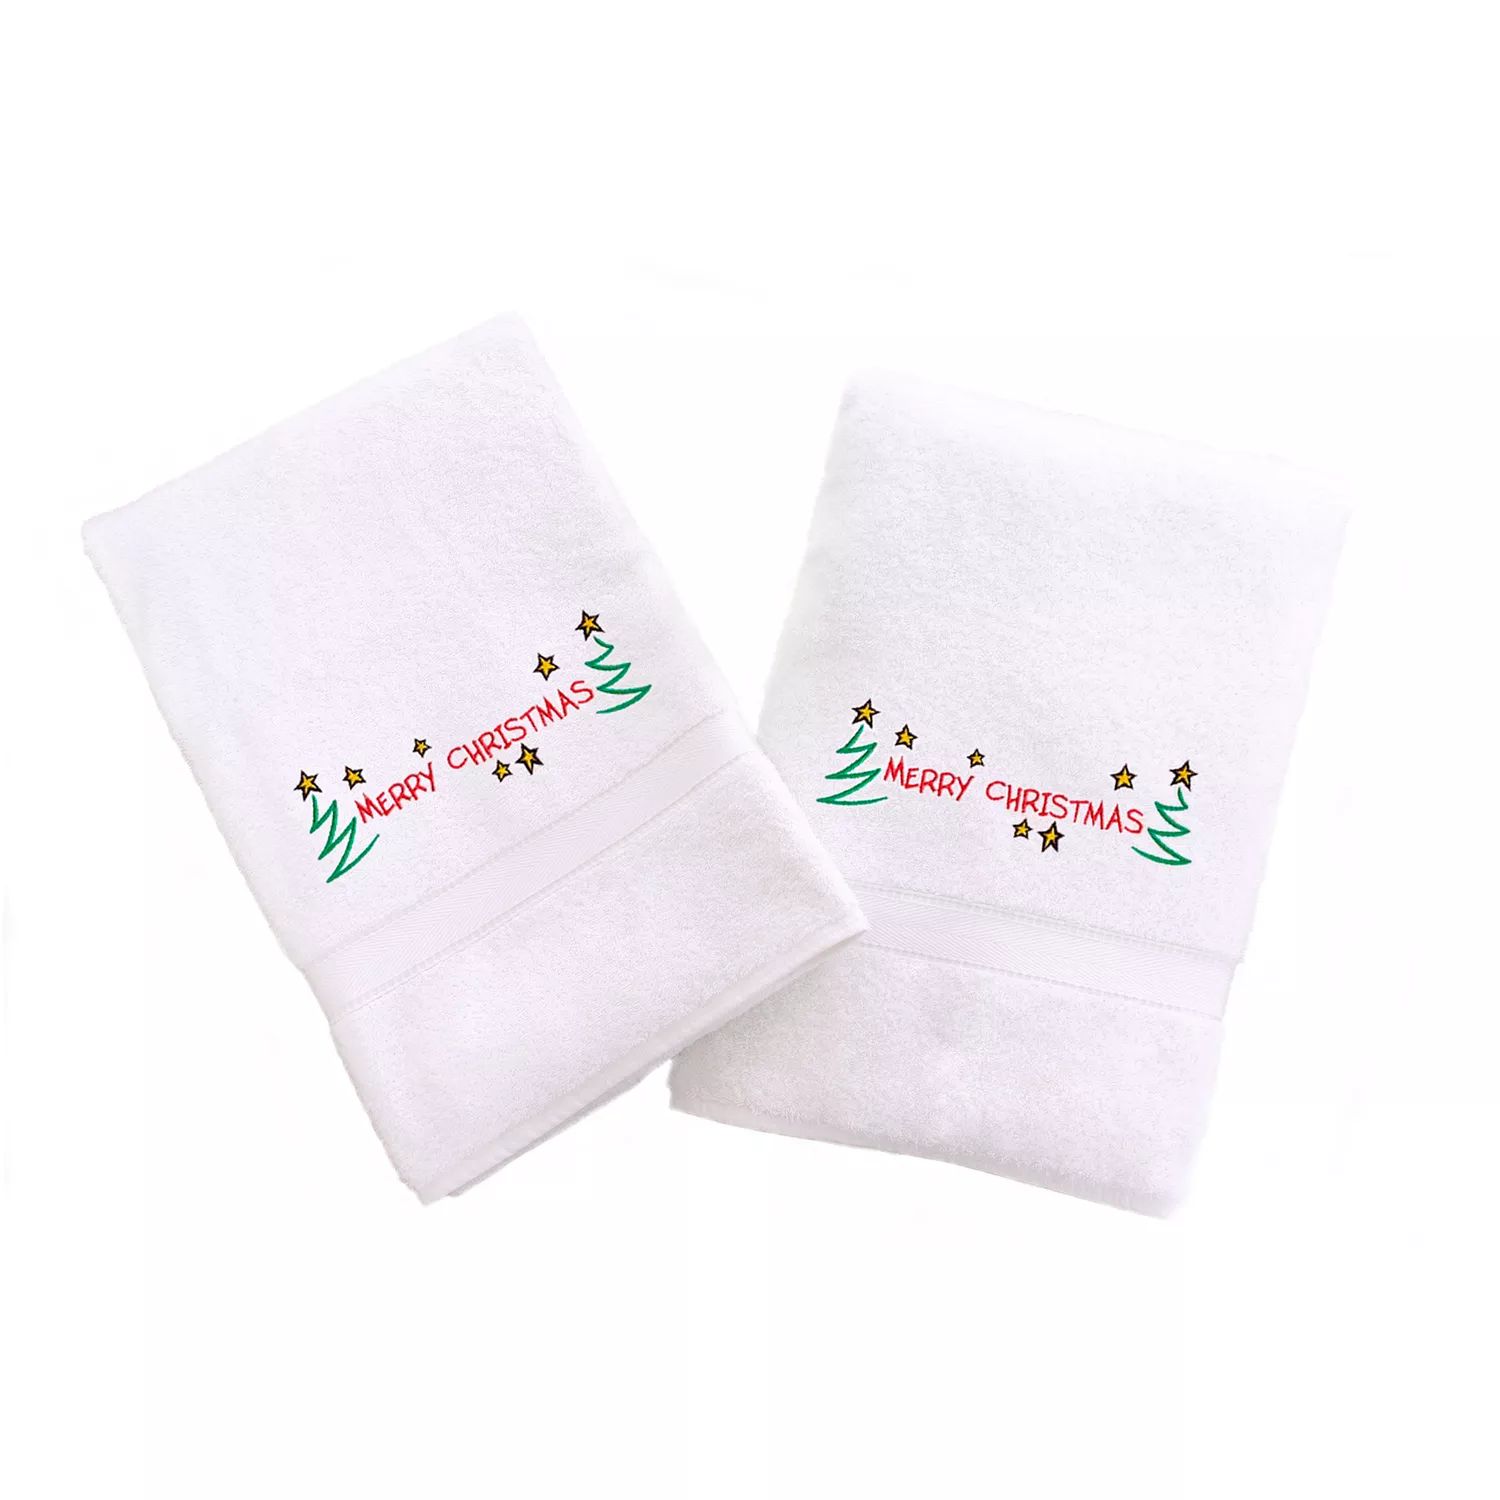 Linum Home Textiles Праздничные полотенца для рук с вышивкой бордюром, 2 упаковки mccourt lisa merry christmas stinky face